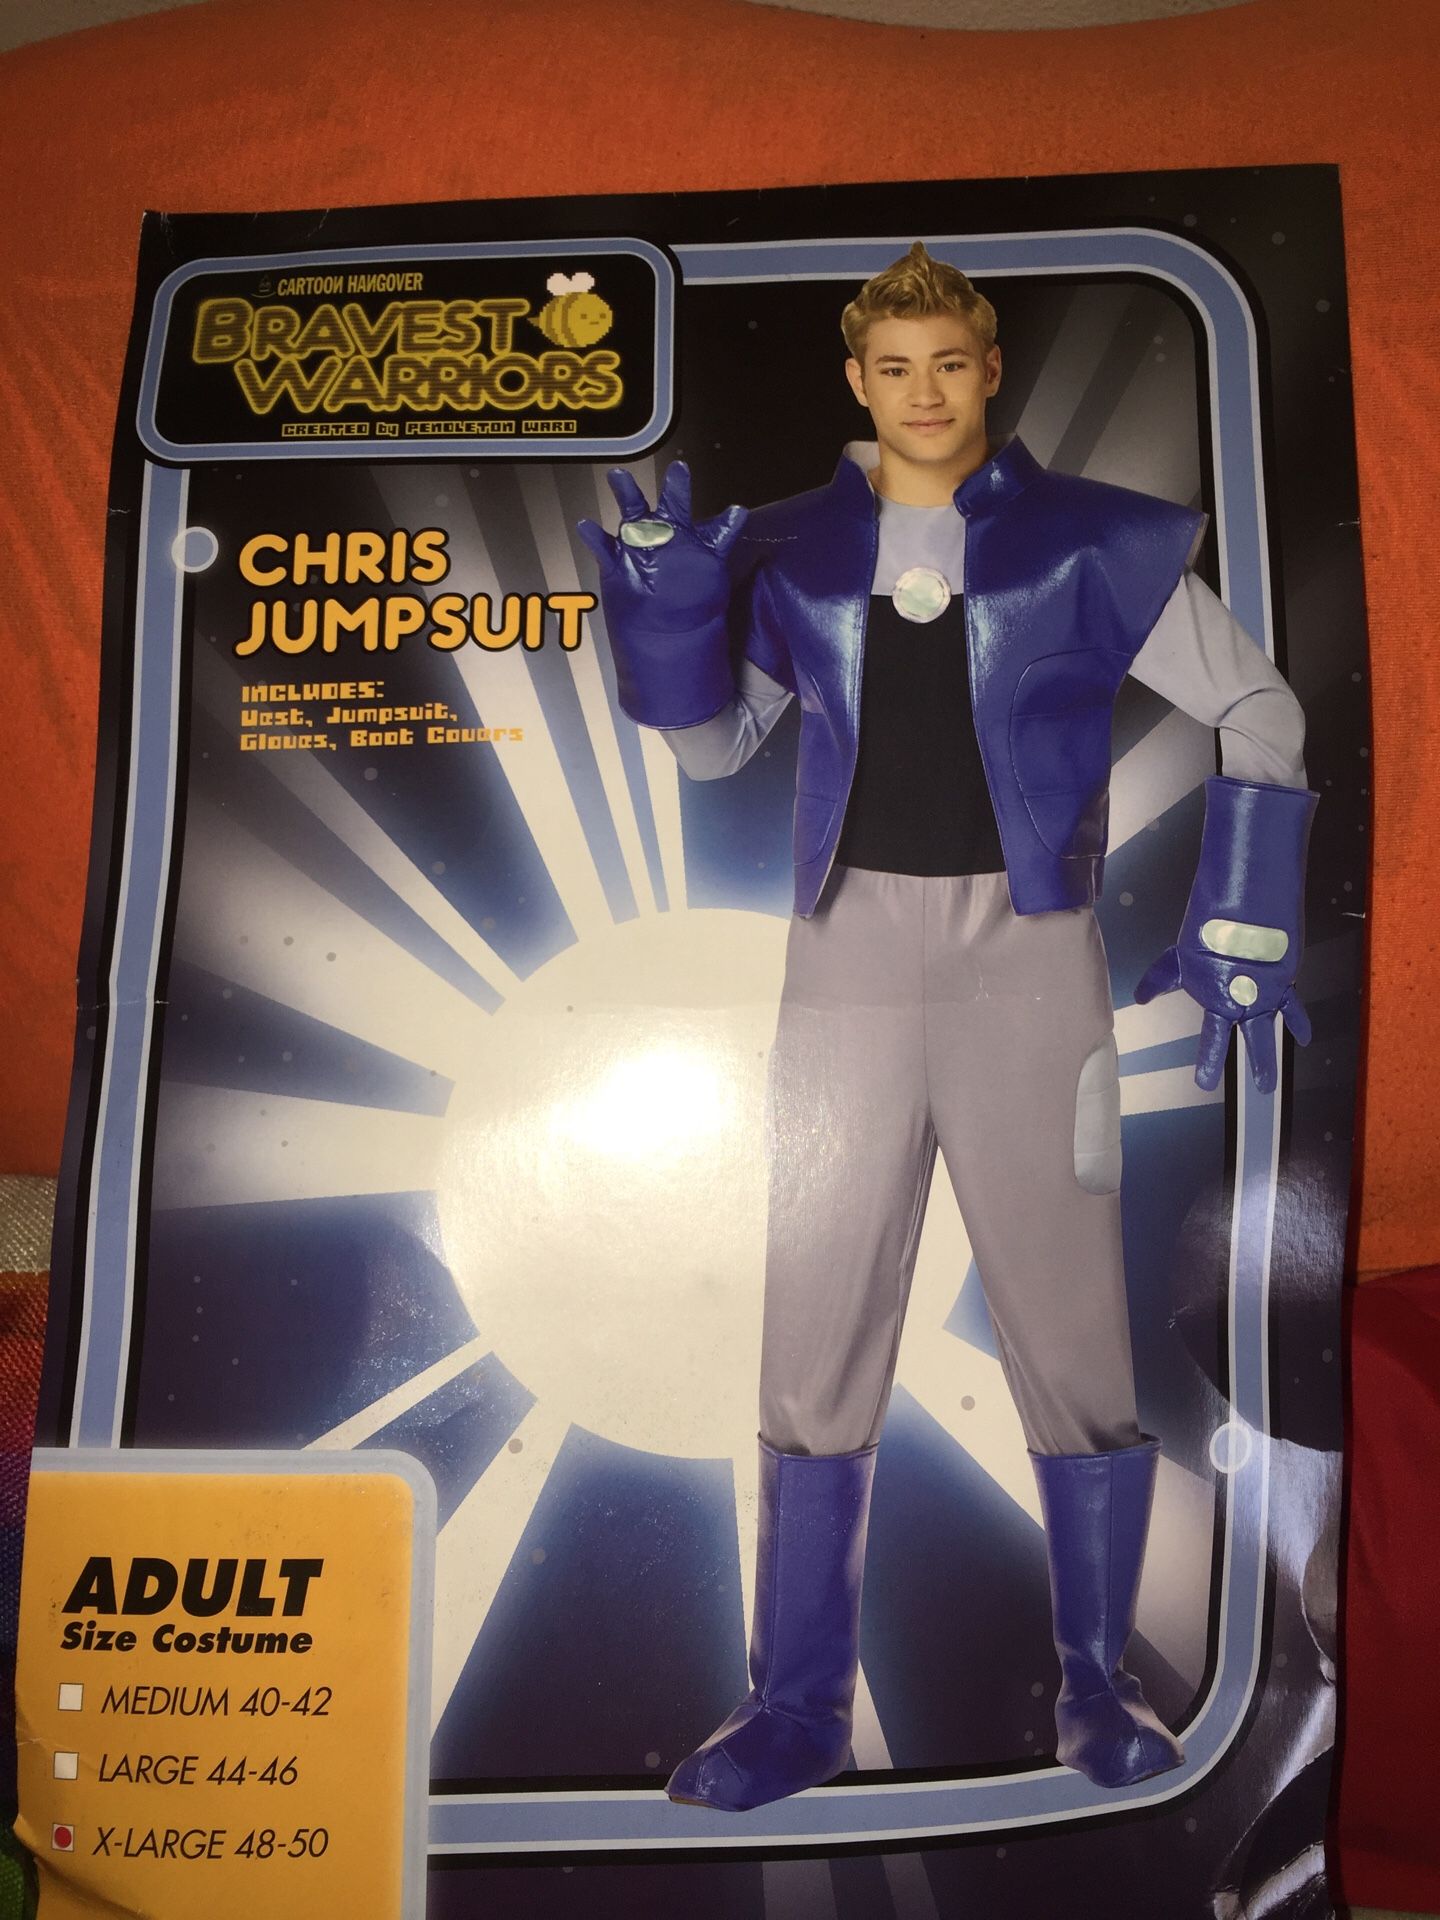 Adult Halloween costume Chris jumpsuit